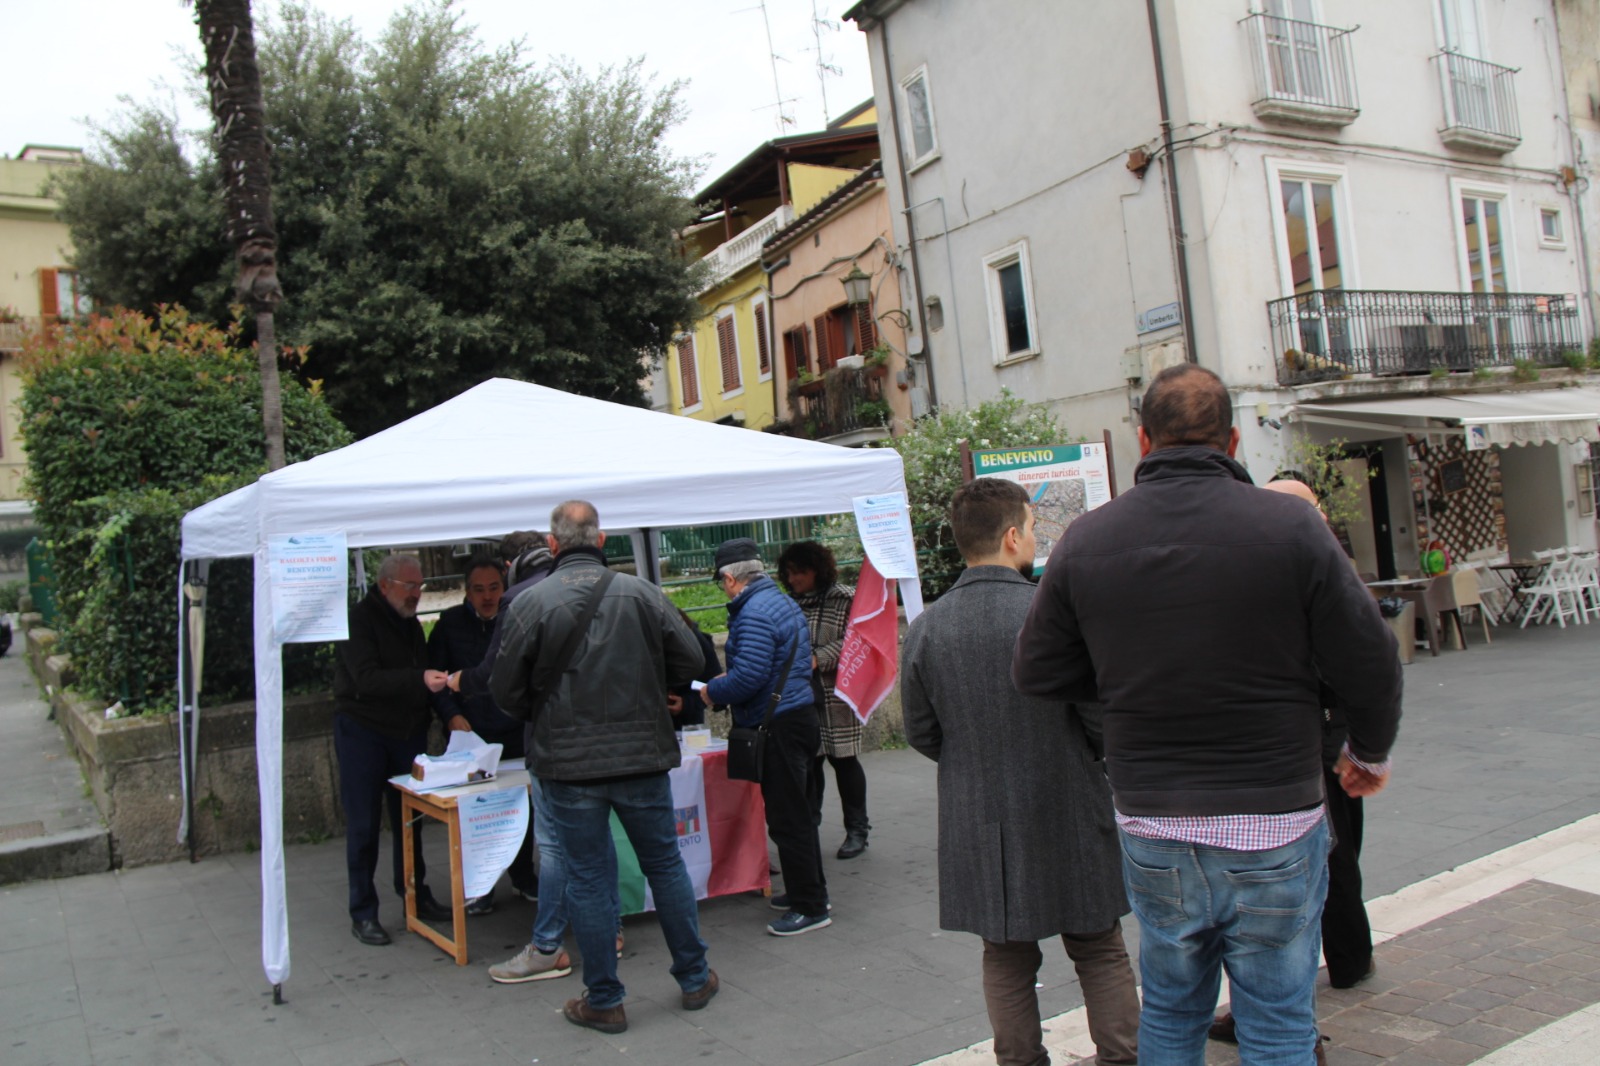 Benevento| Tesseramento ANPI e acqua pubblica, Ciervo: sia un momento alto di partecipazione democratica